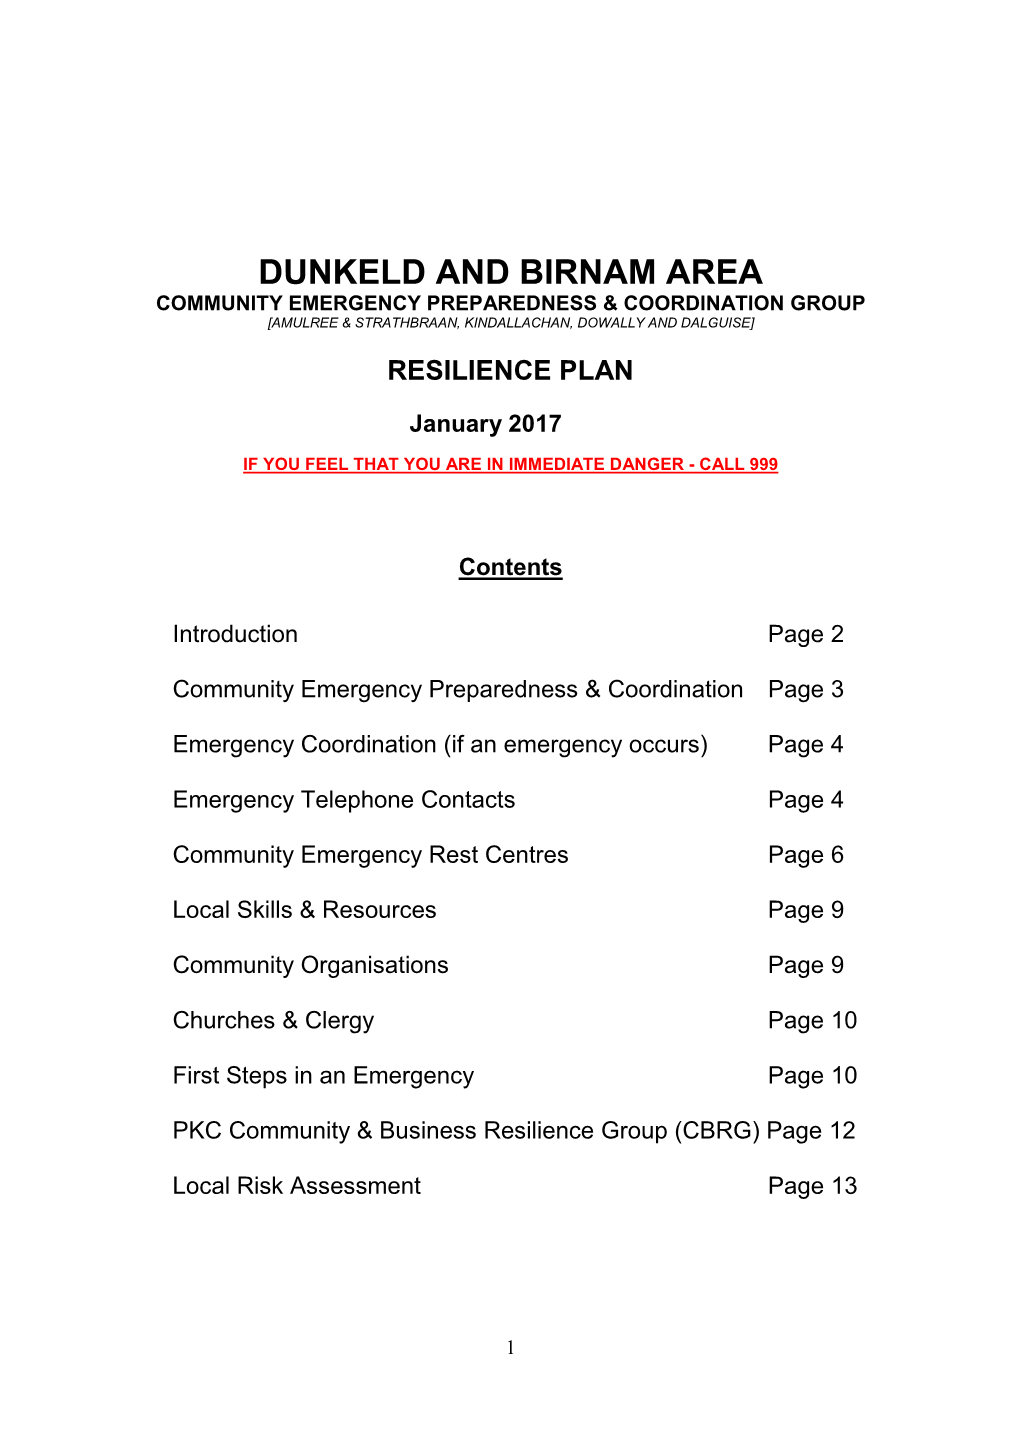 Dunkeld and Birnam Community Resilience Plan Jan 2017